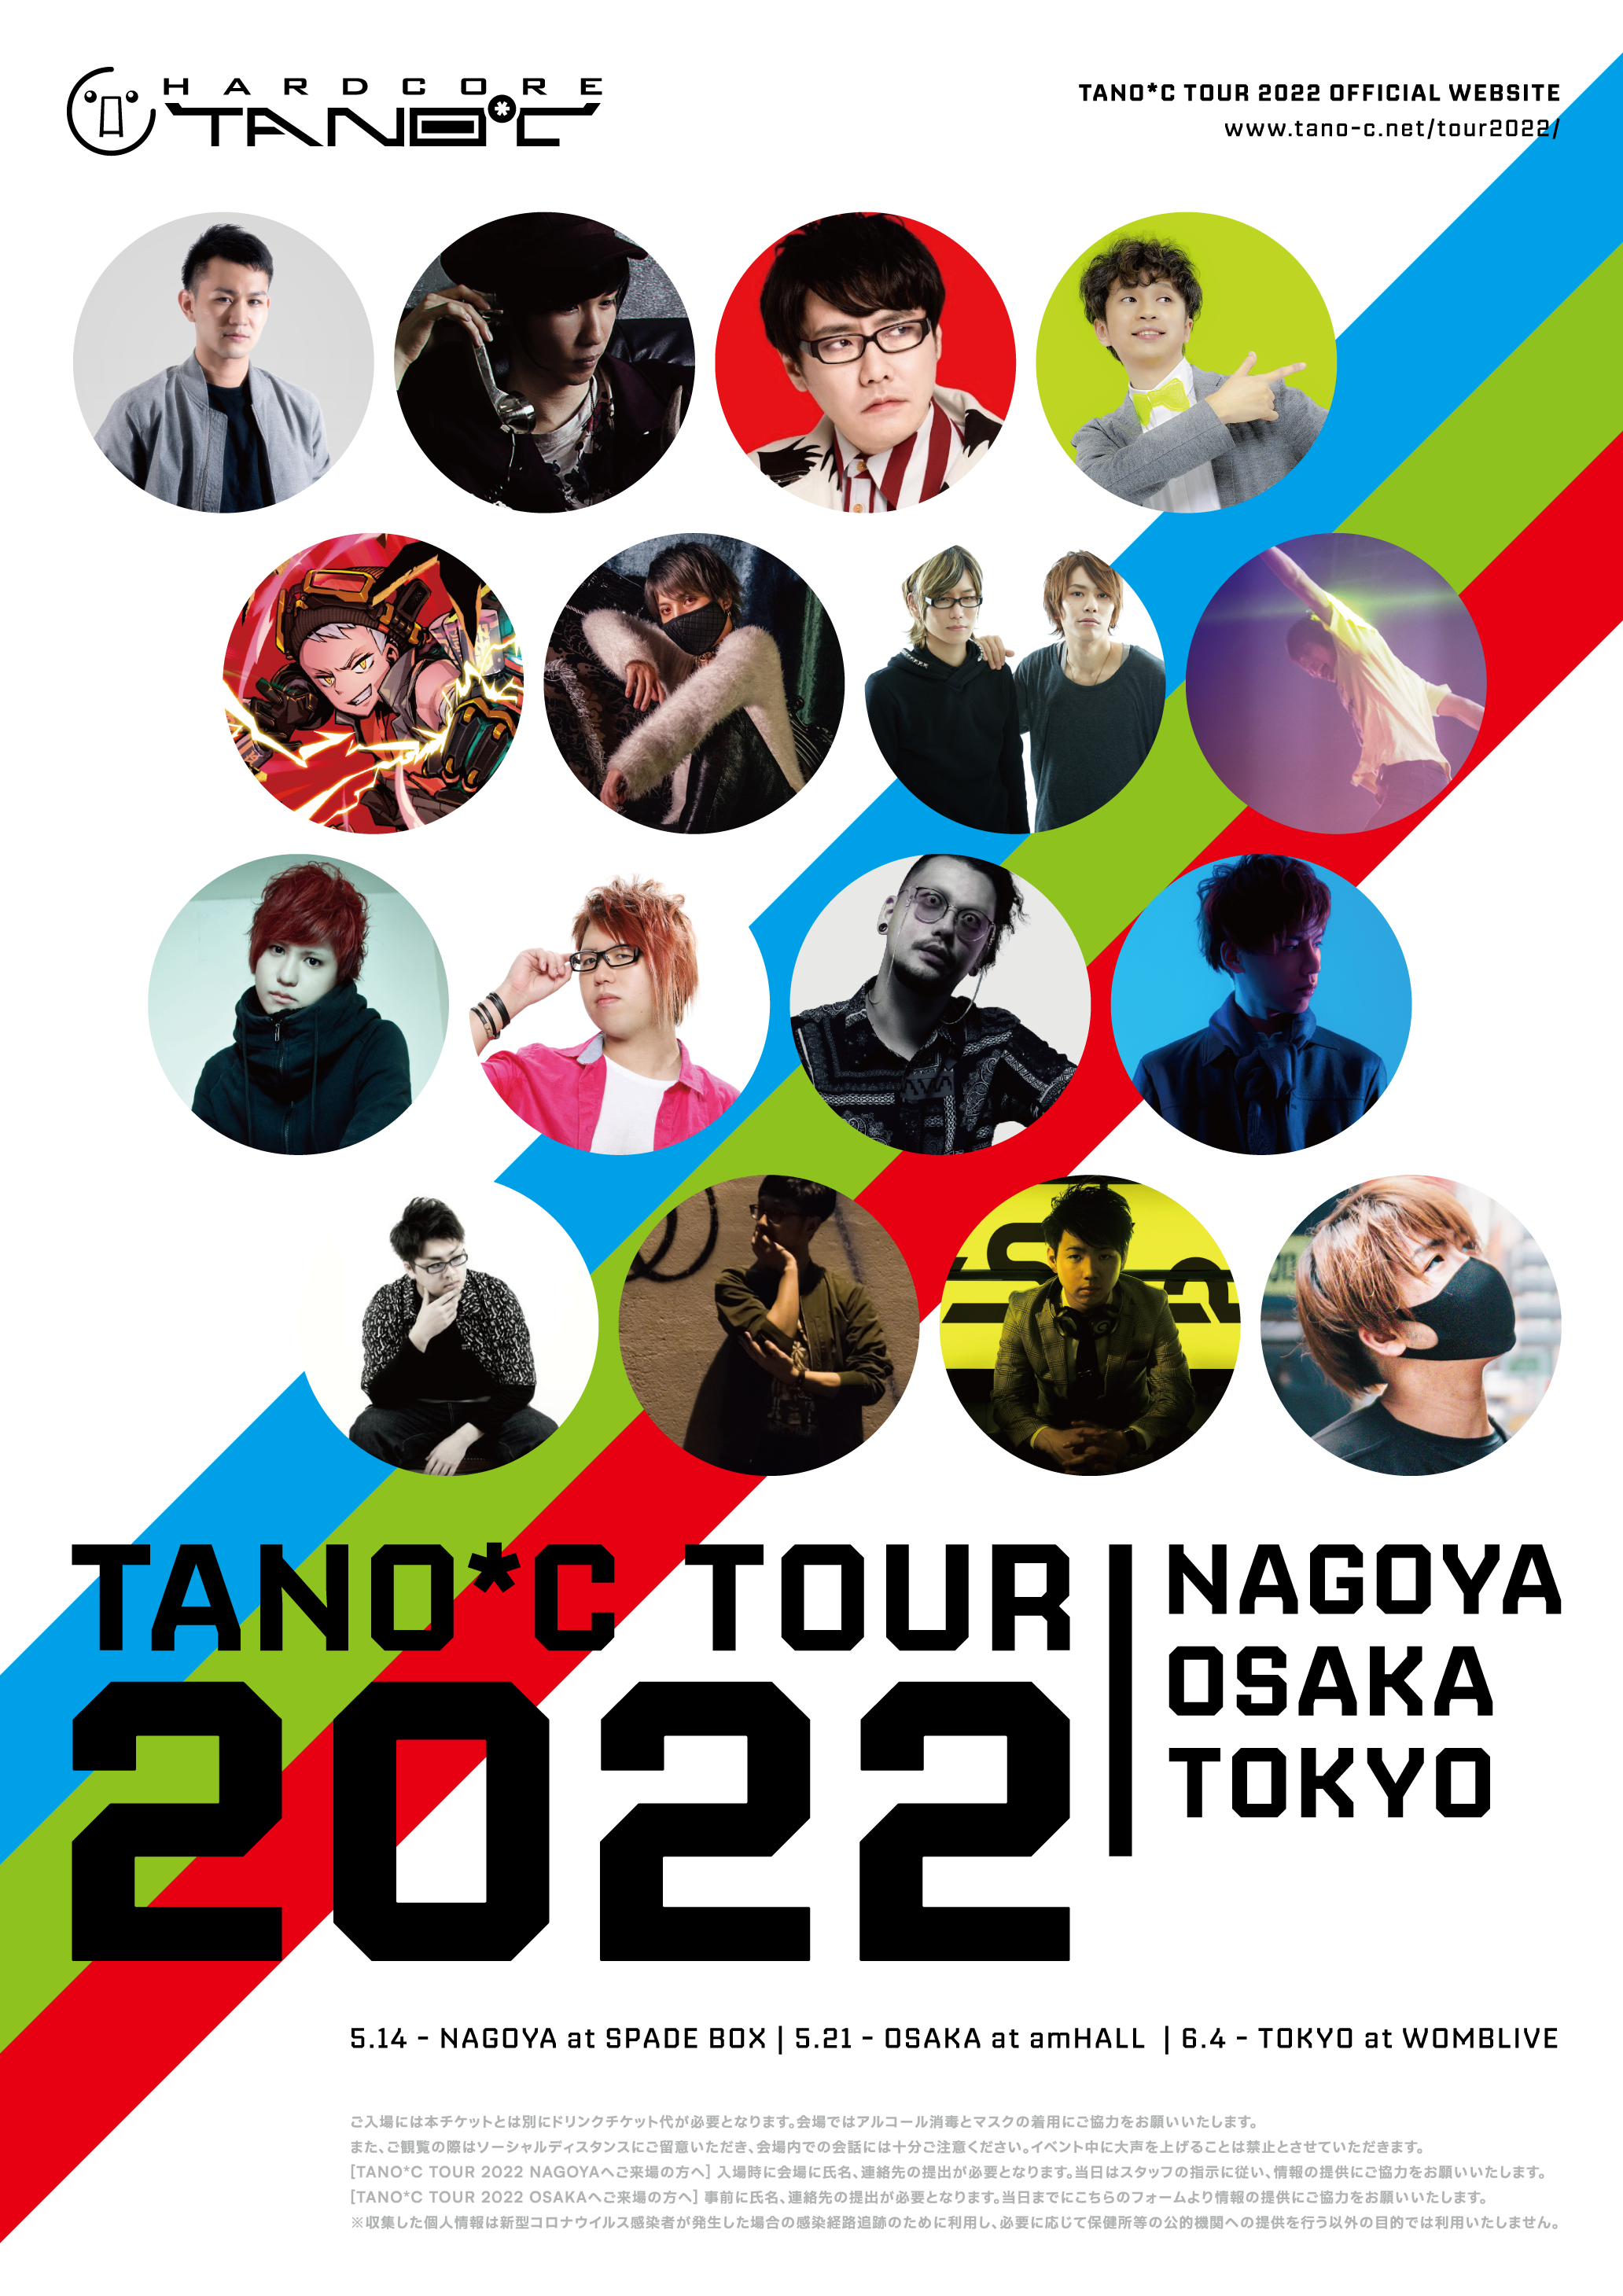 TANO*C TOUR 2022